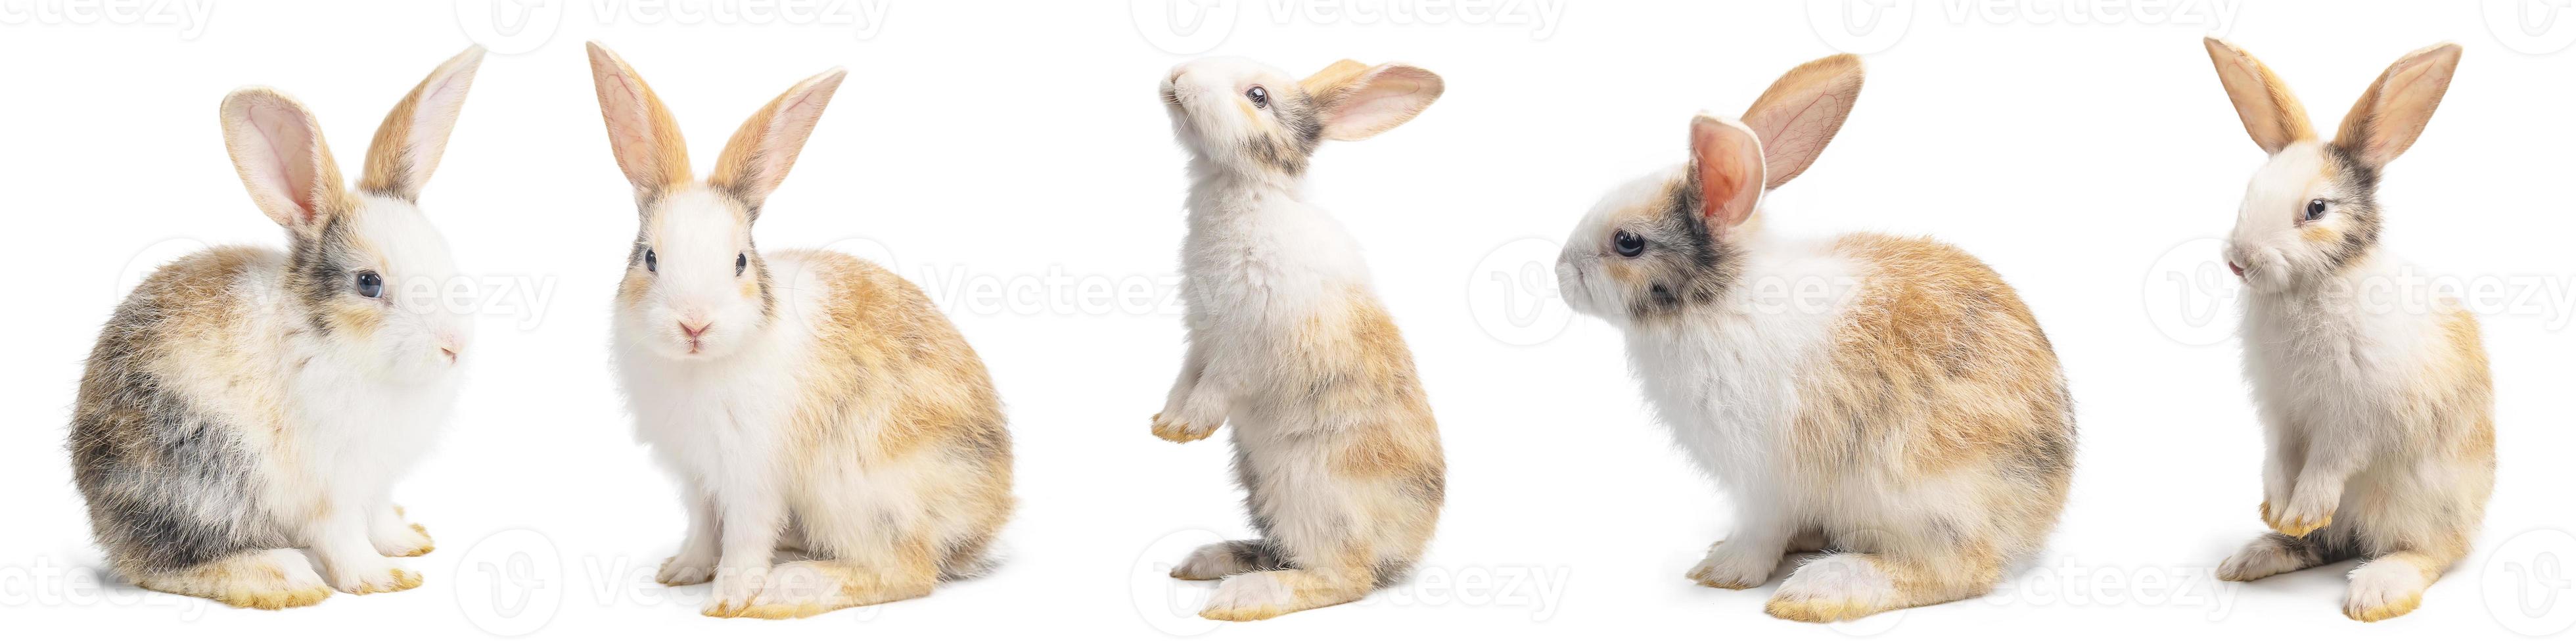 groep kleine bruine en witte konijnen in veel acties op witte achtergrond met uitknippad. foto